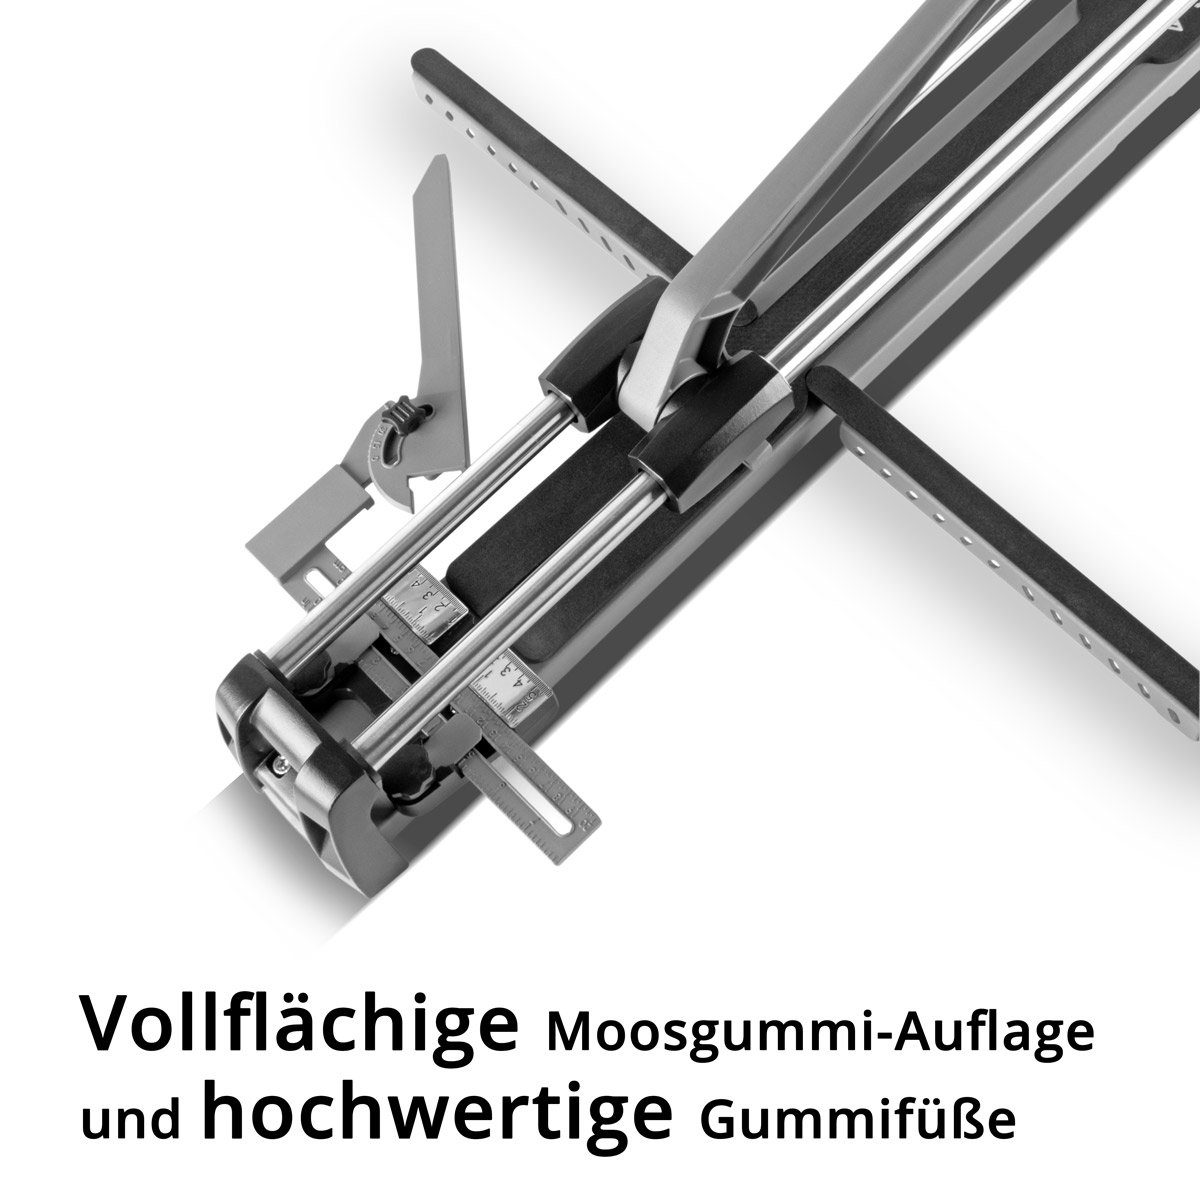 STAHLWERK Fliesenschneider Profi Fliesenschneider 2-tlg. mm mit 800 mm, Schnittlänge, Schnittlänge max.: Packung, 80